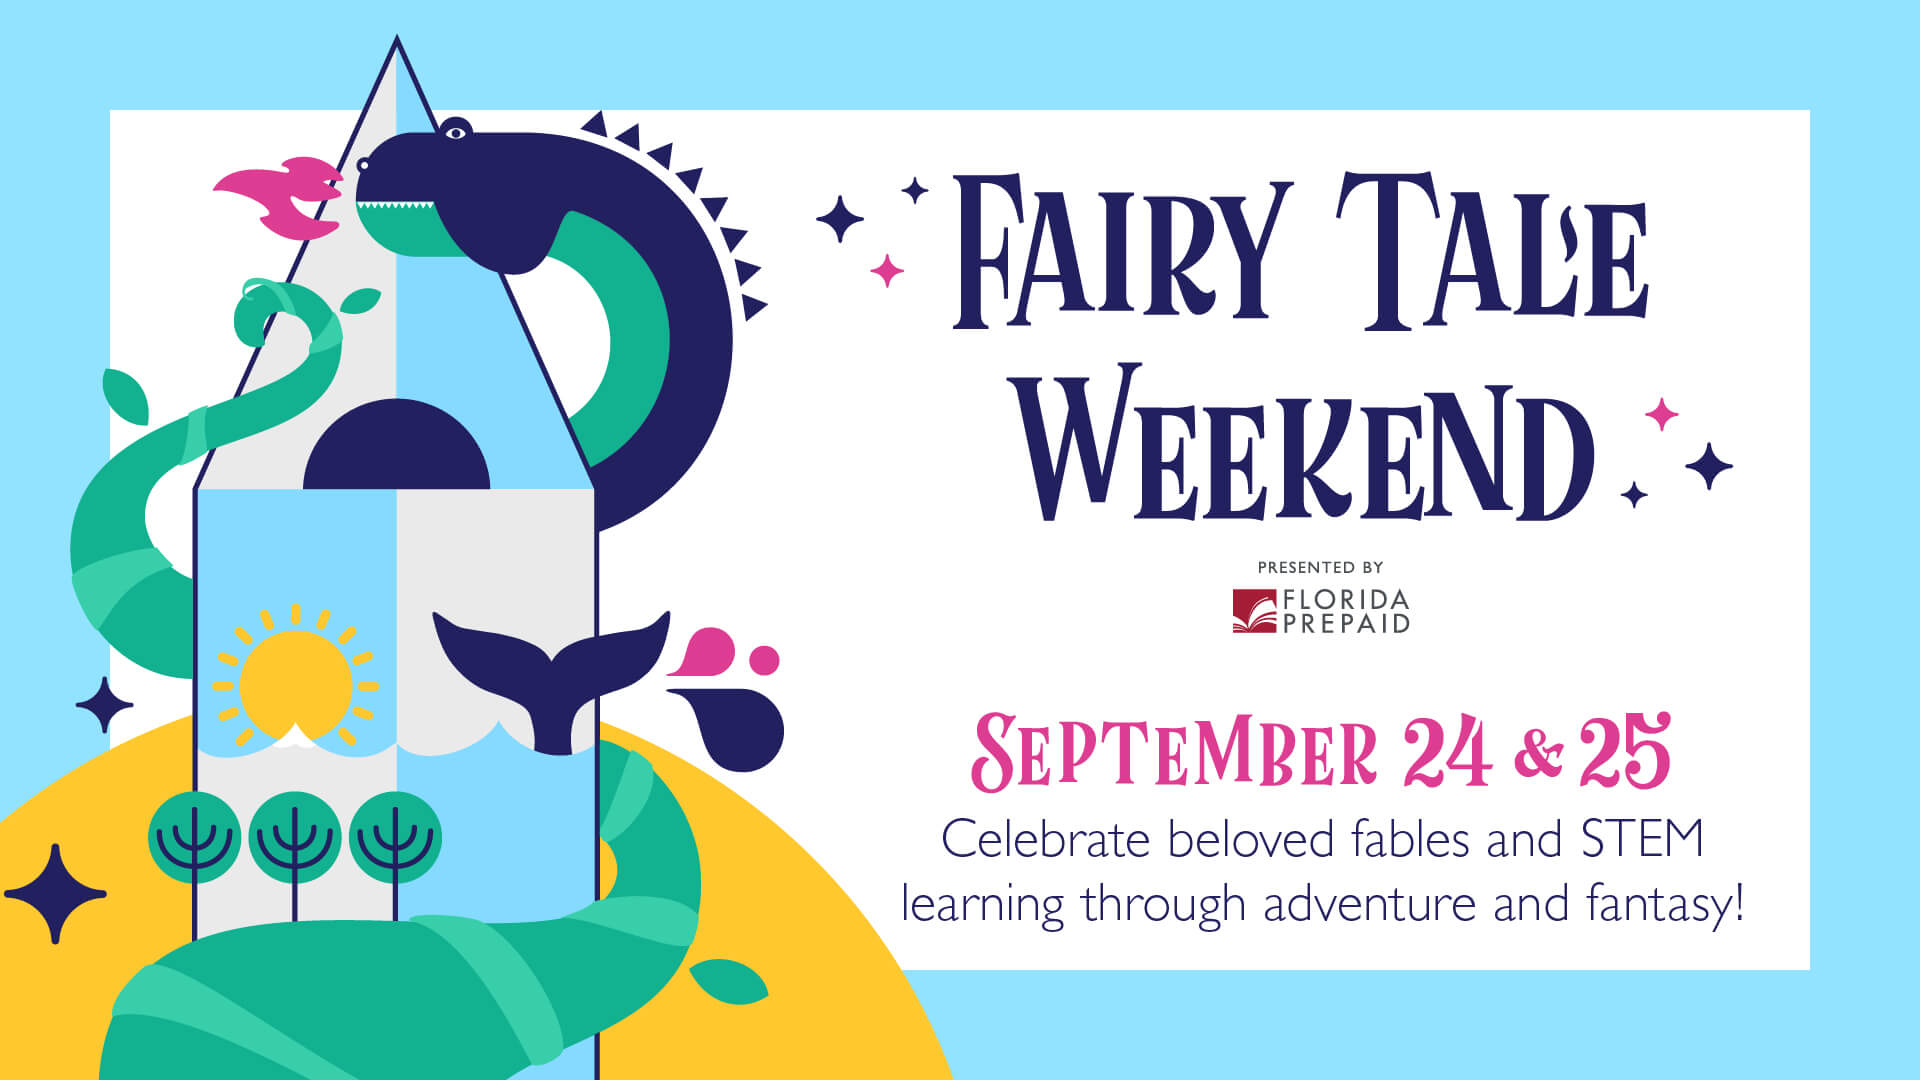 Fairy Tale Weekend presented by Florida Prepaid - September 24 & 25